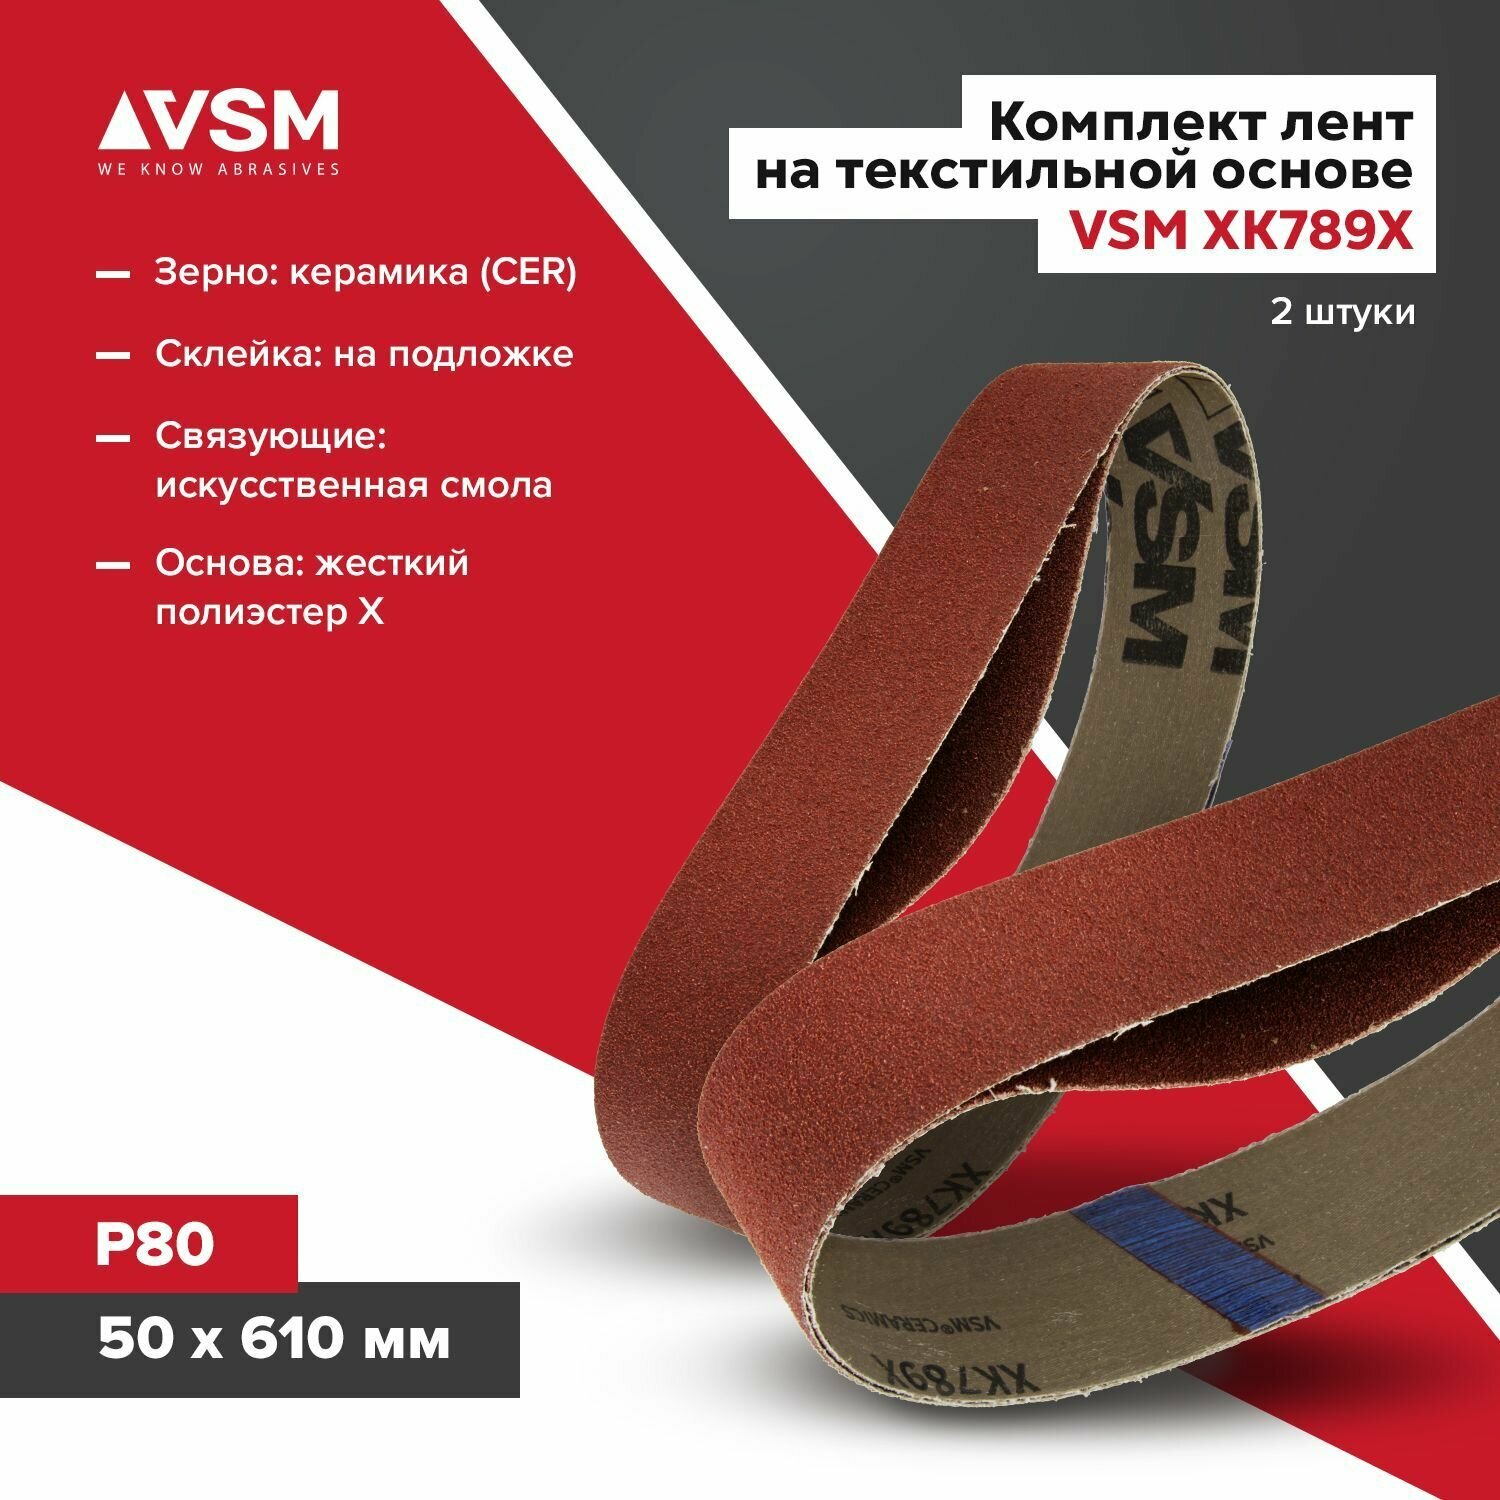 Комплект лент на текстильной основе VSM XK789X 50х 610мм P80 подложка (2шт)